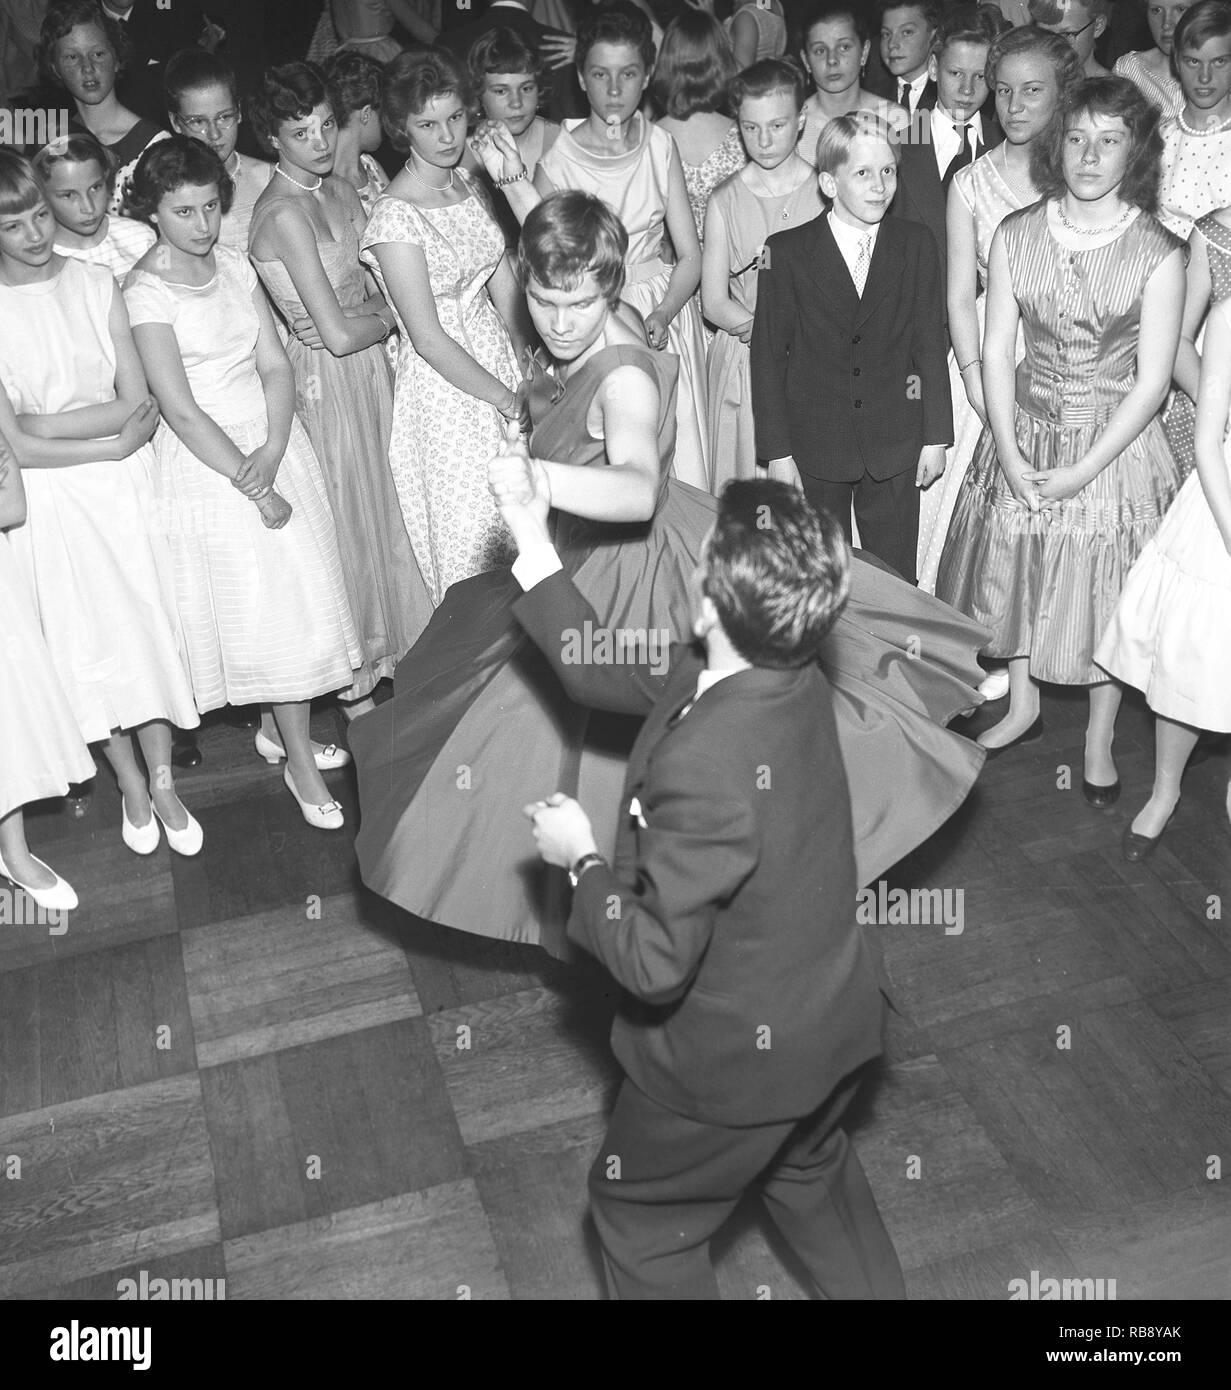 Danser dans les années 50. Un jeune couple est de danser et de passer à la musique. Photo Suède Kristoffersson. Ref CC22-10 Banque D'Images